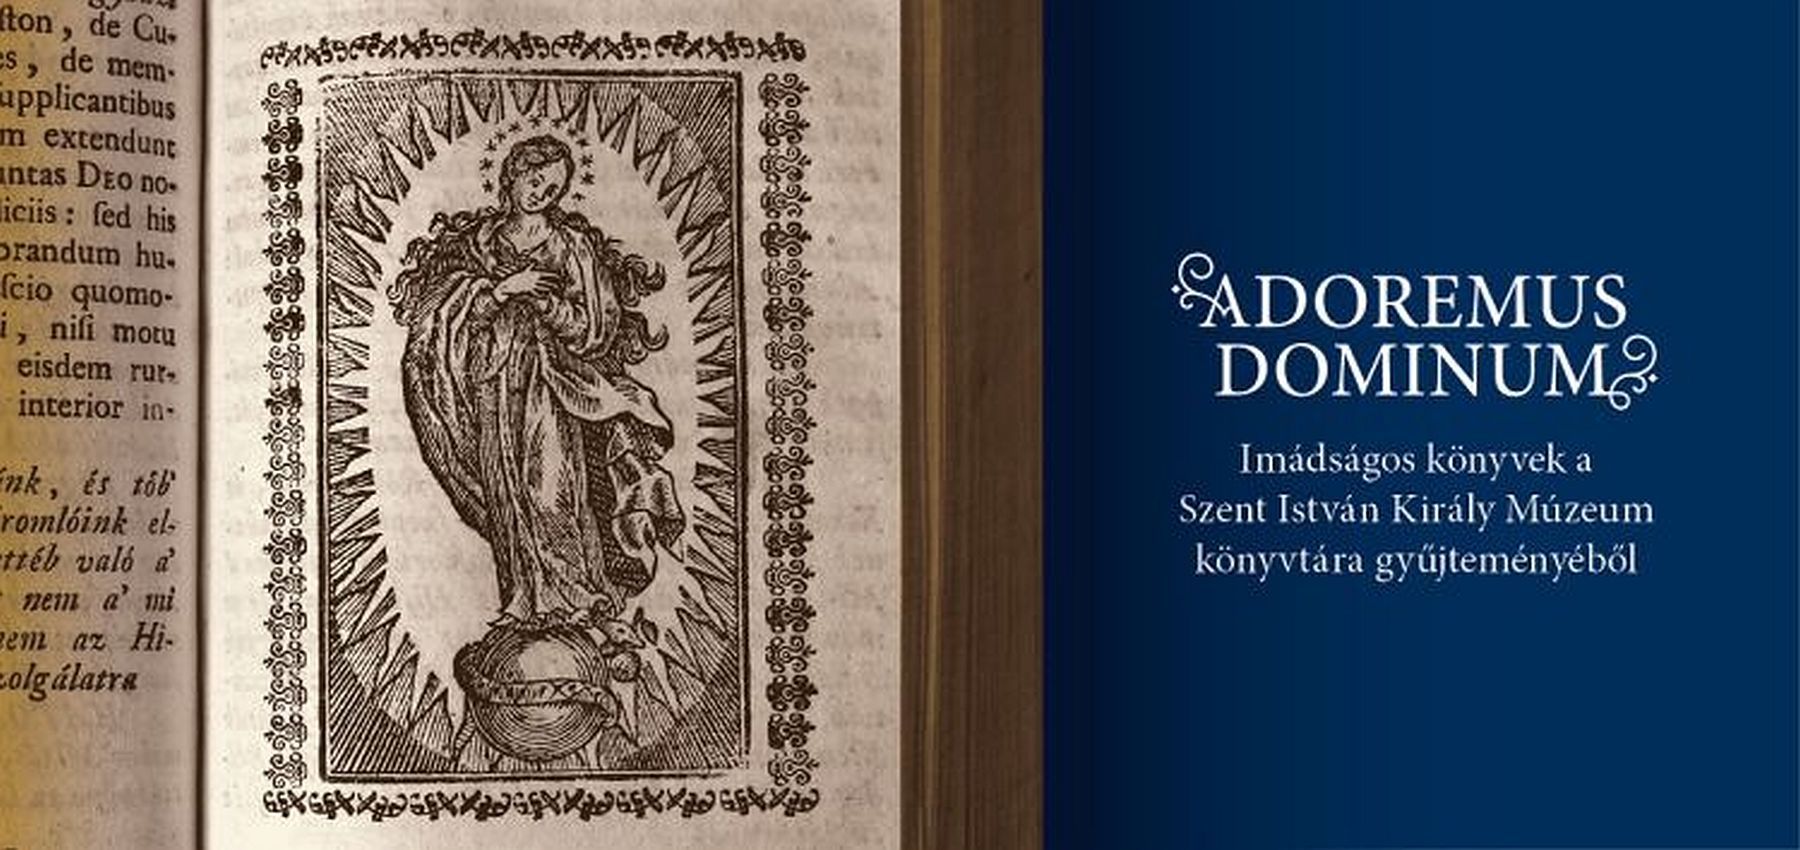 Adoremus Dominum - imádságos könyvek a Szent István Király Múzeum gyűjteményéből